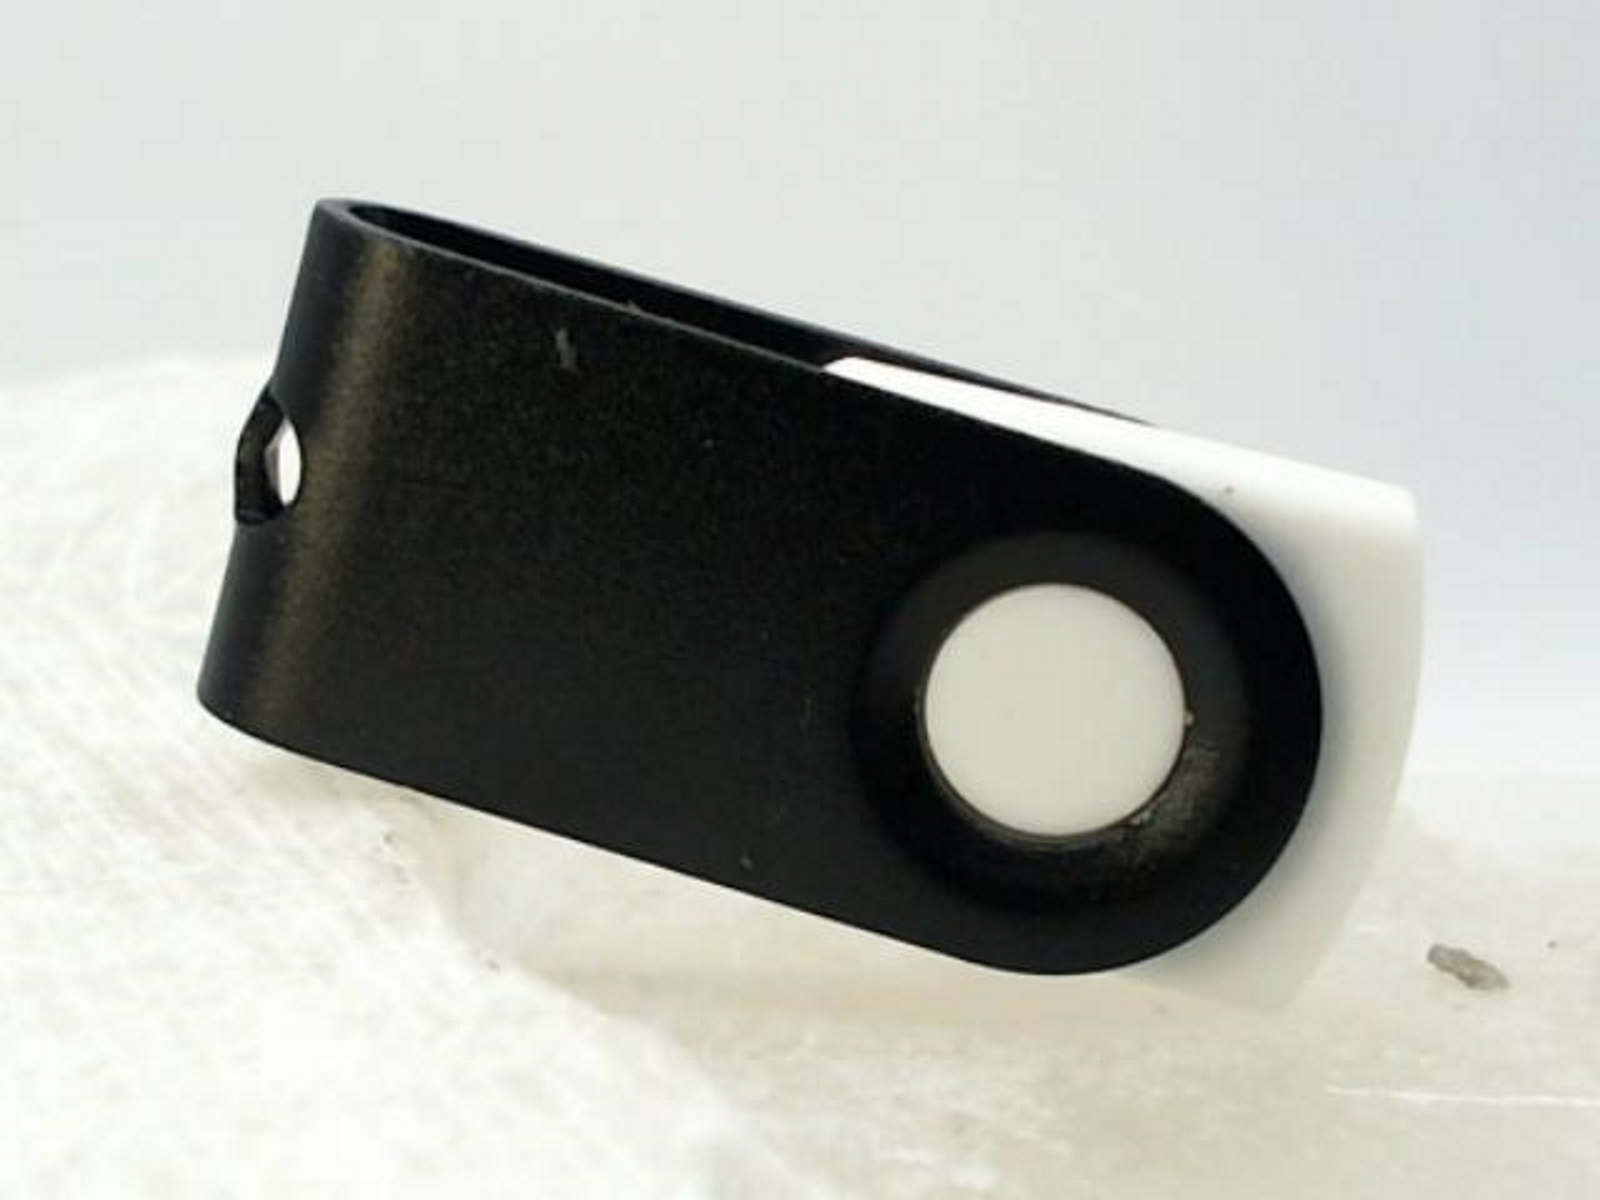 (Weiß-Schwarz, USB-Stick 32 ® MINI-SWIVEL GB) GERMANY USB